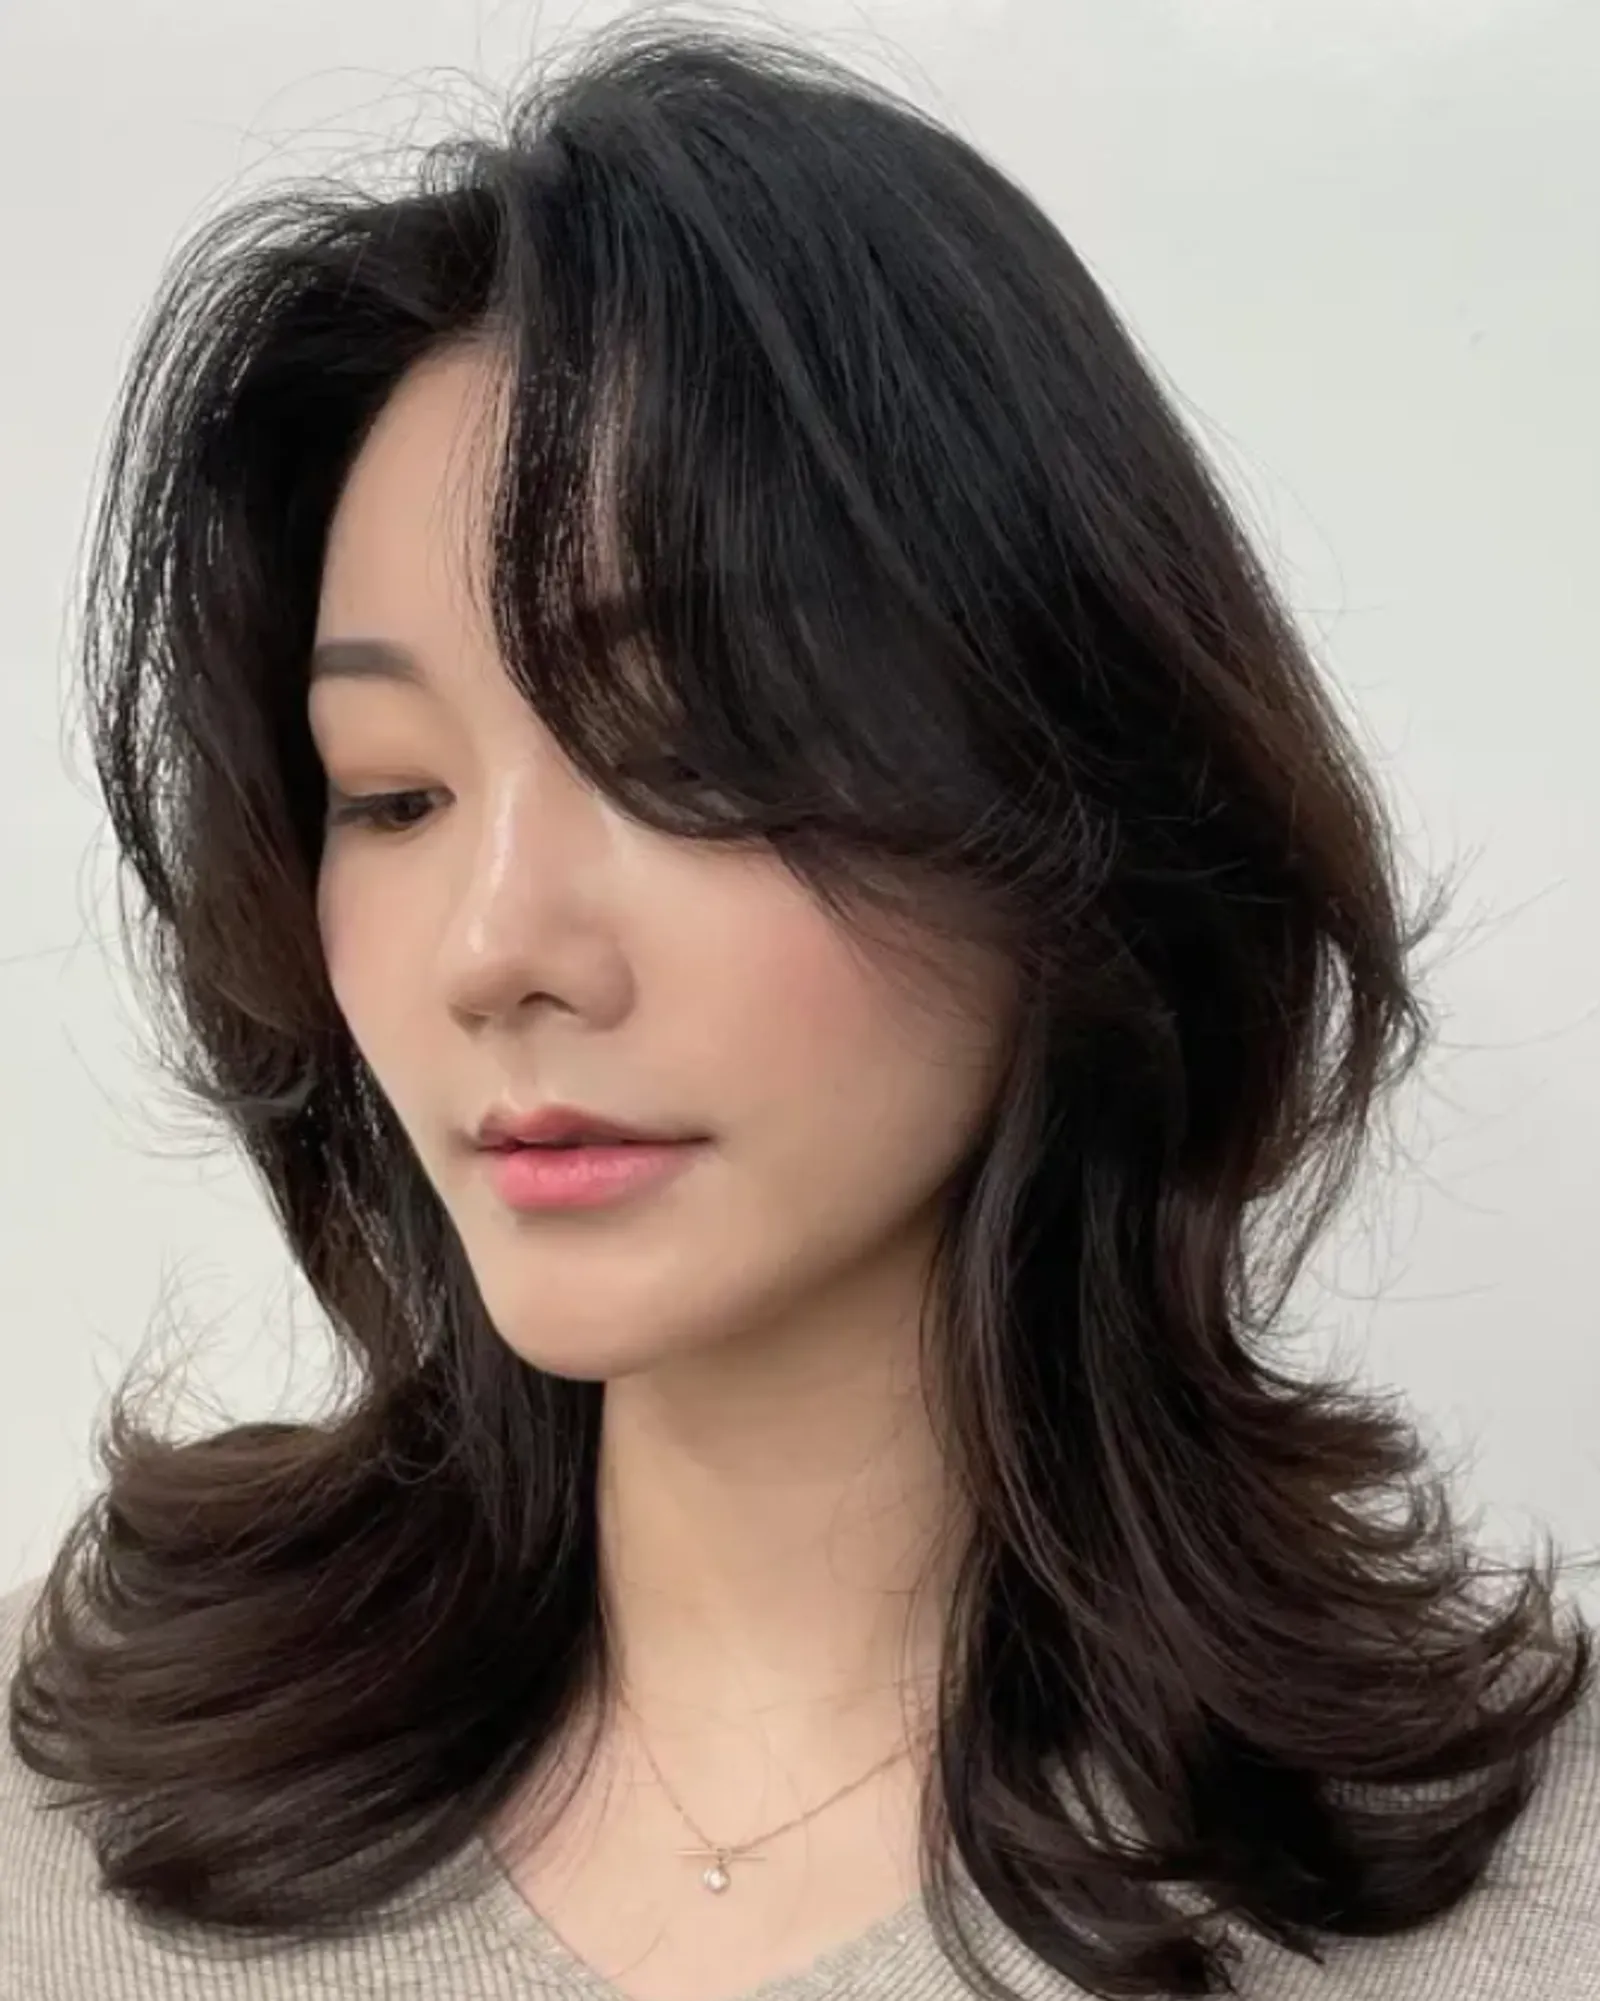 11 Model Potongan Rambut Layer Pendek Sebahu Kekinian